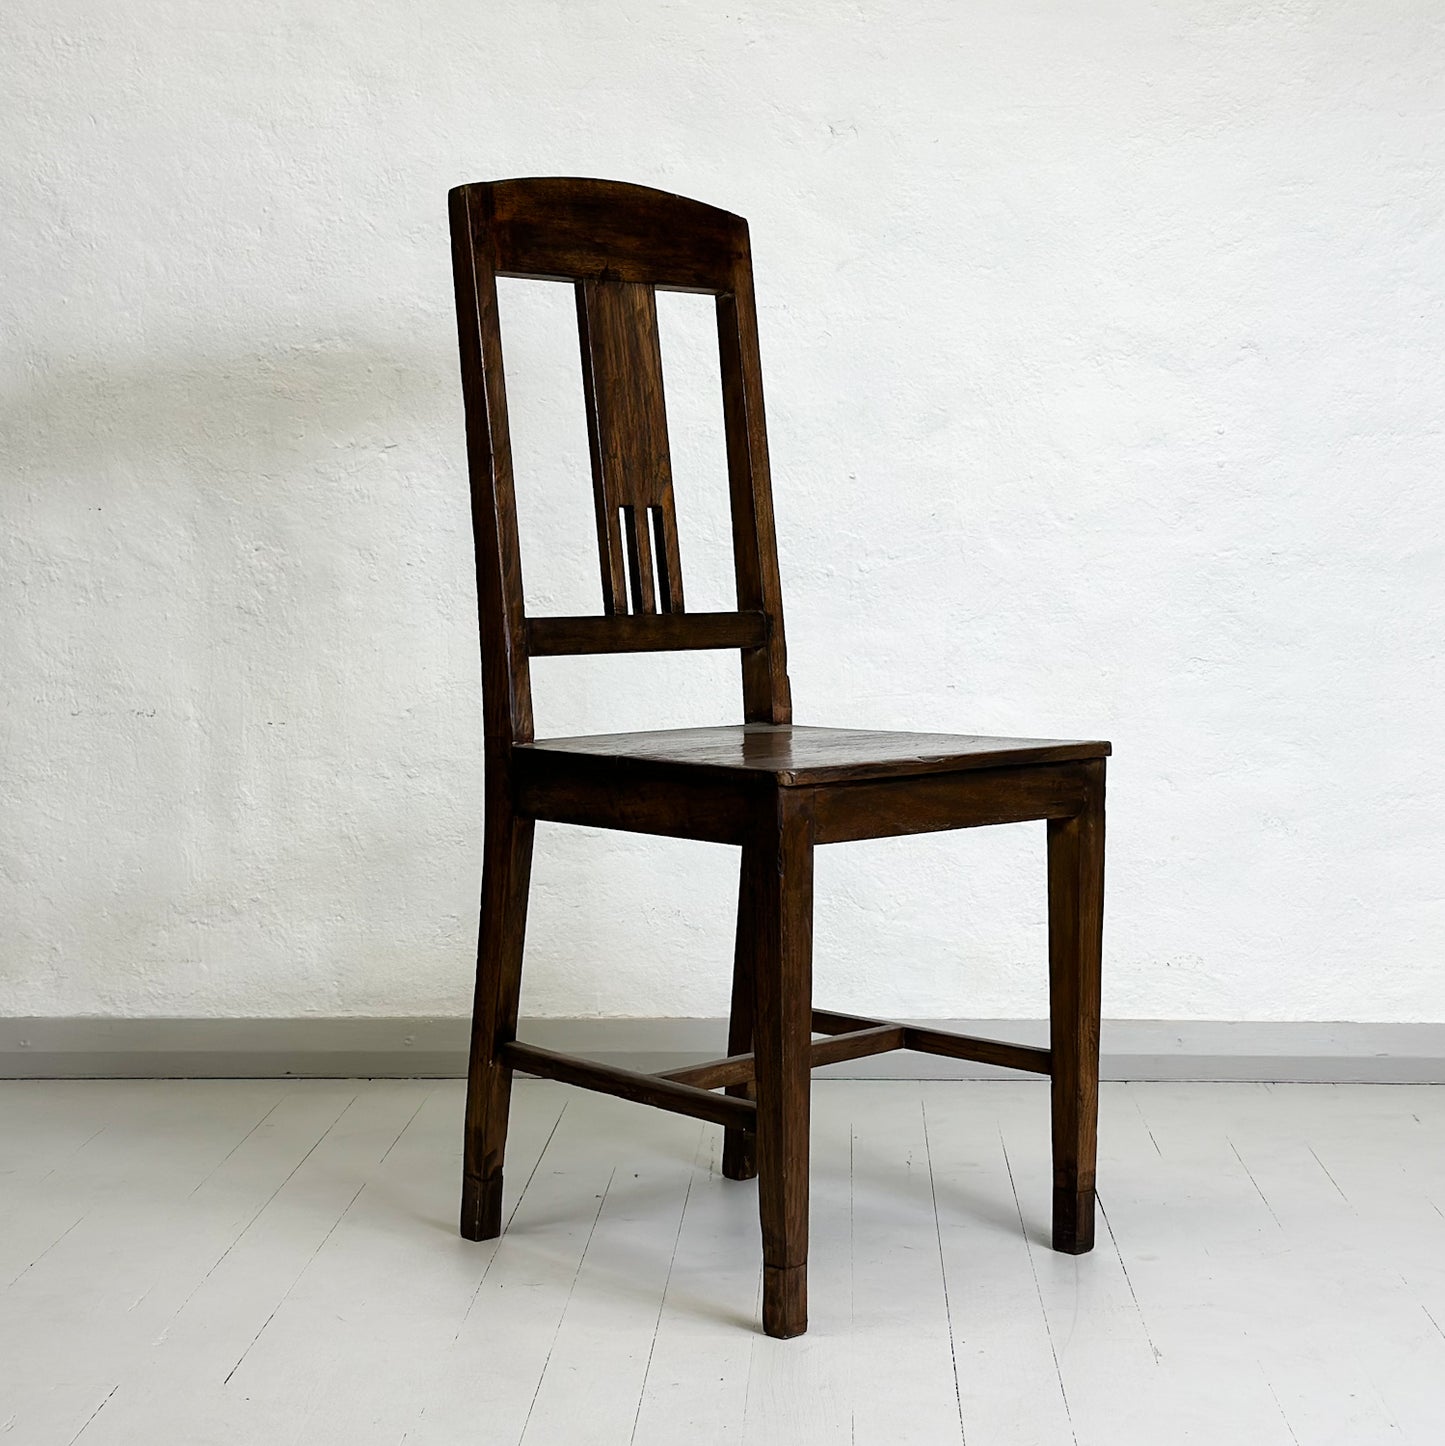 Vintage Teak Chair